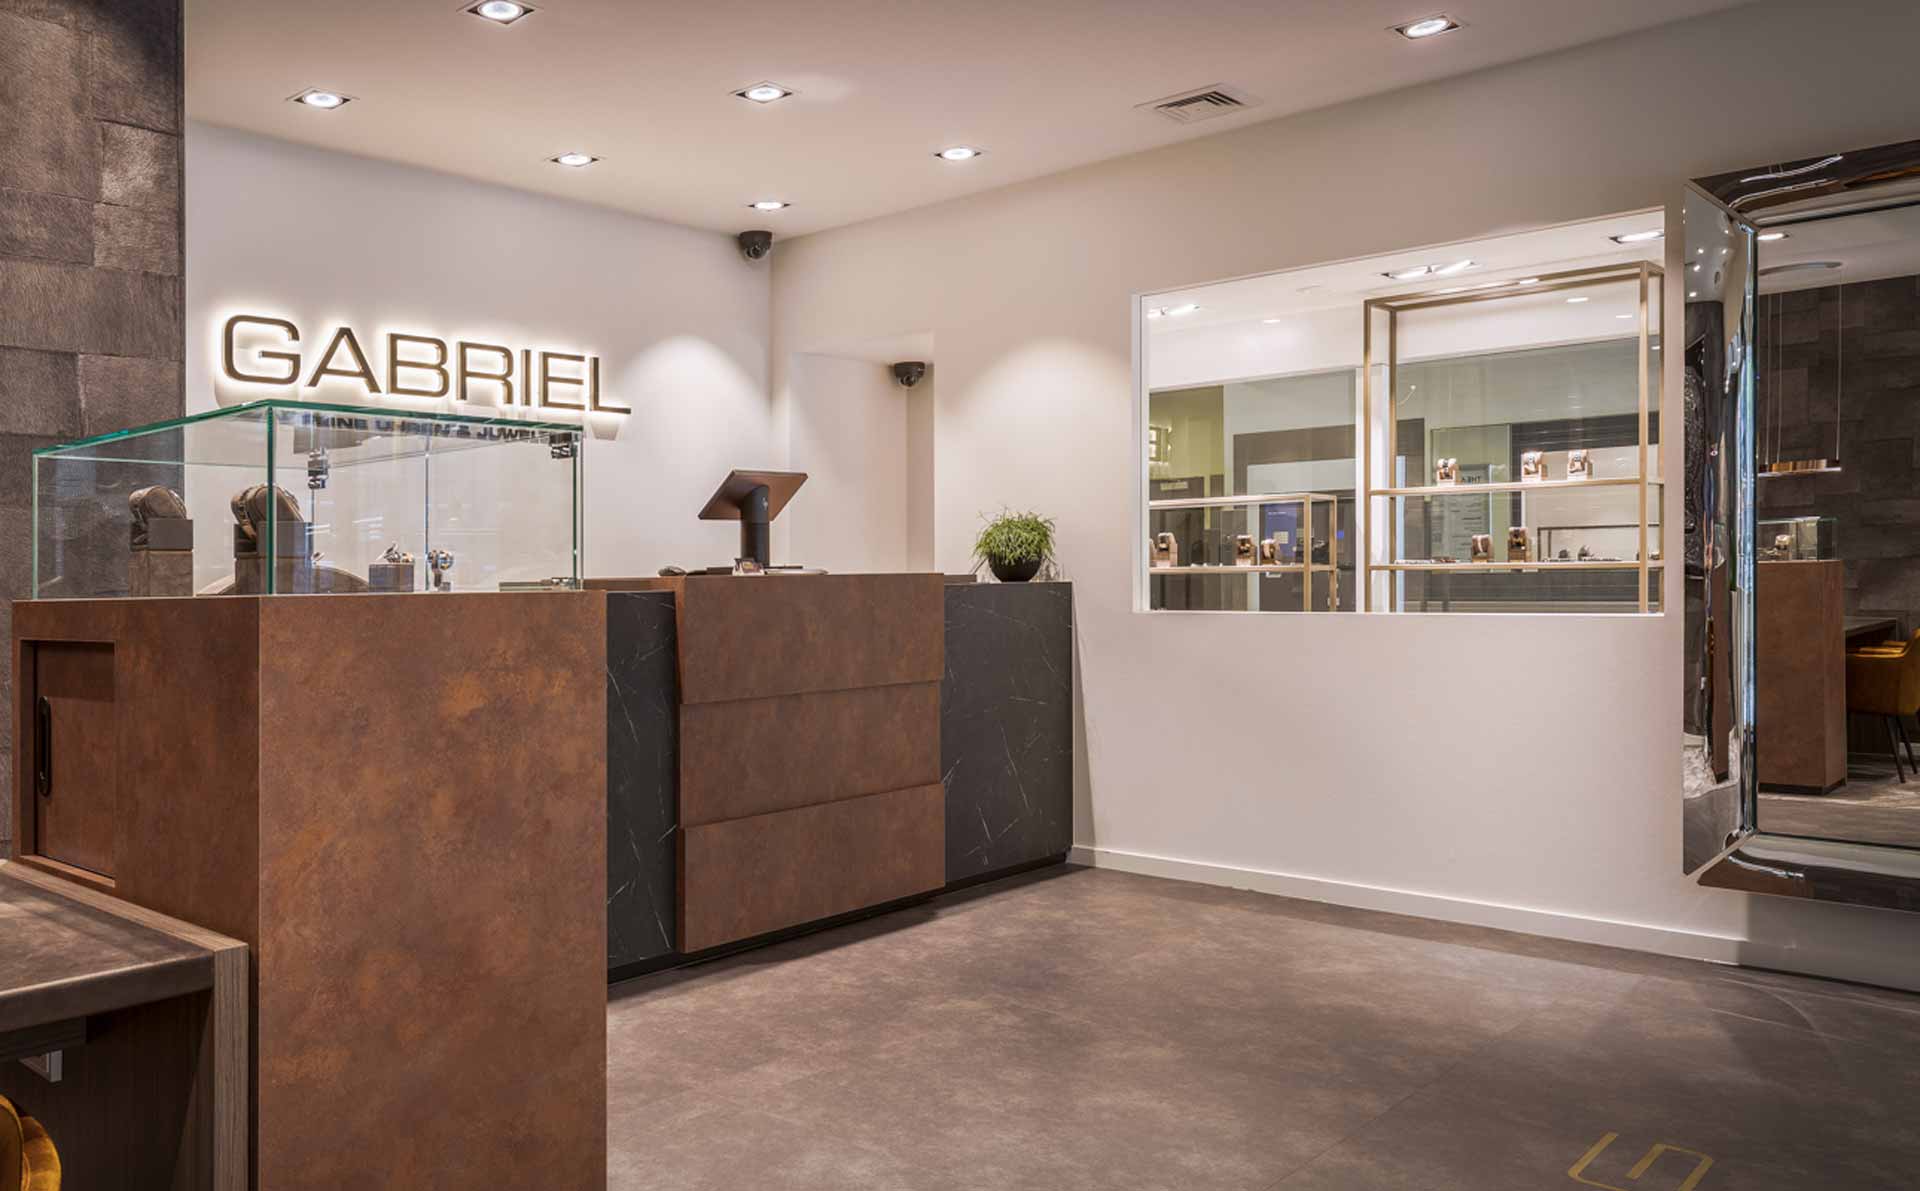 GABRIEL luxury brand watches